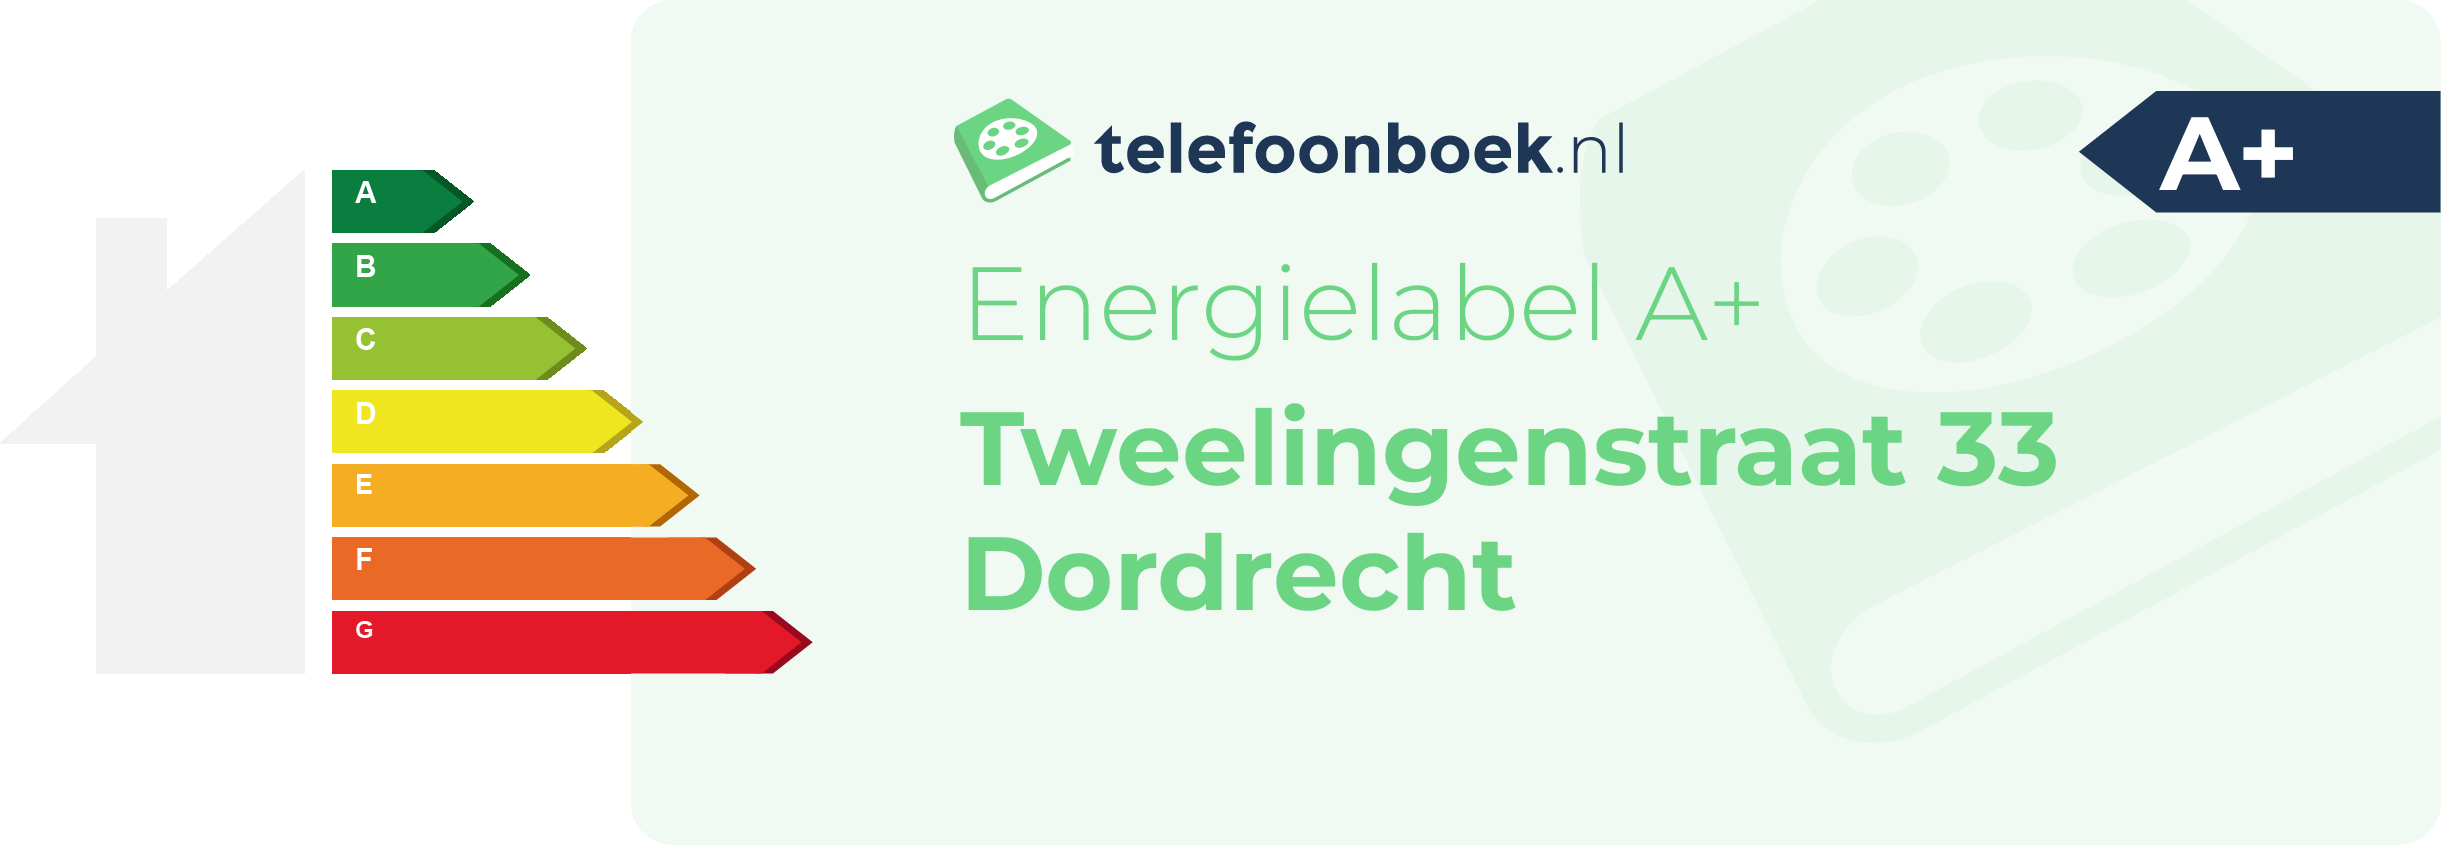 Energielabel Tweelingenstraat 33 Dordrecht